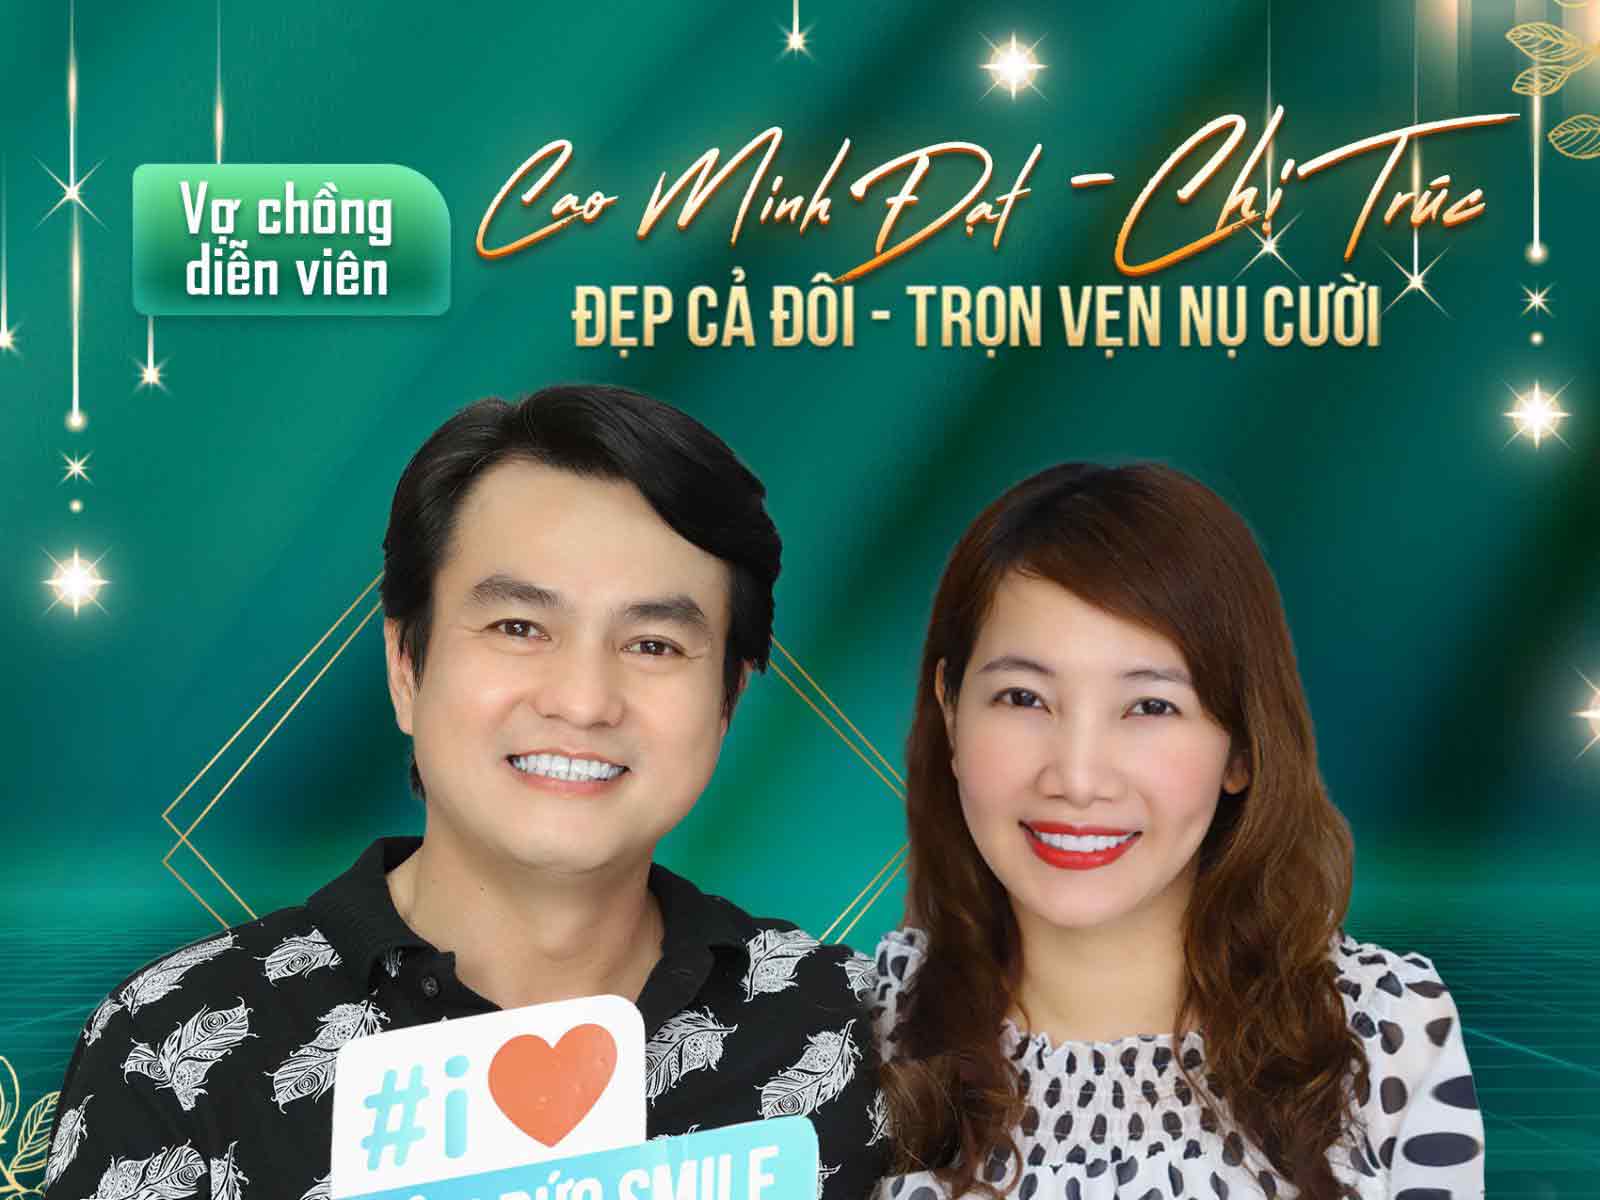 Vợ chồng diễn viên Cao Minh Đạt làm răng sứ tại nha khoa casino online uy tín



